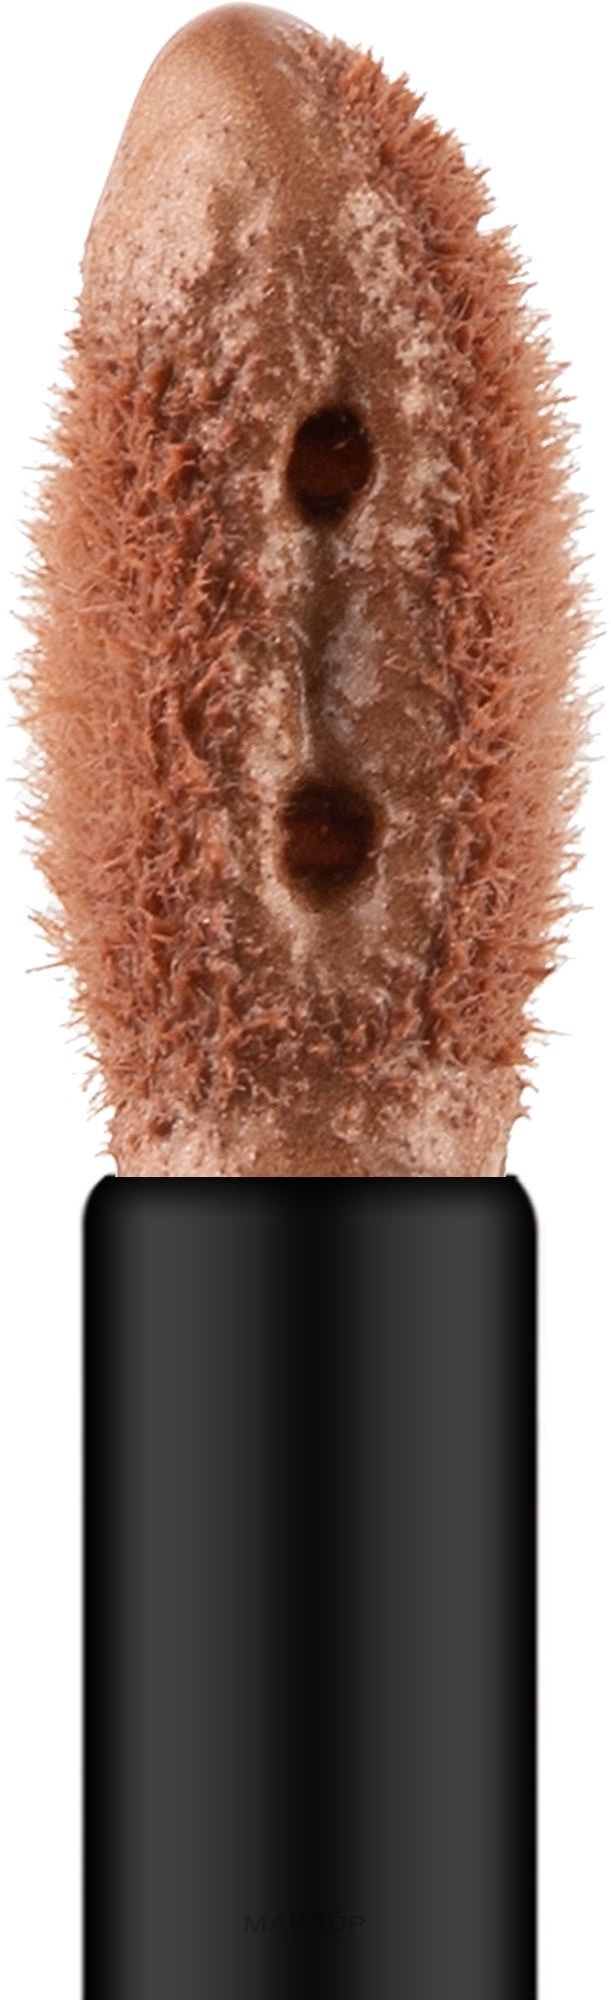 Givenchy Prisme Libre Skin-Caring Liquid Highlighter - Рідкий хайлайтер для обличчя — фото Bronz